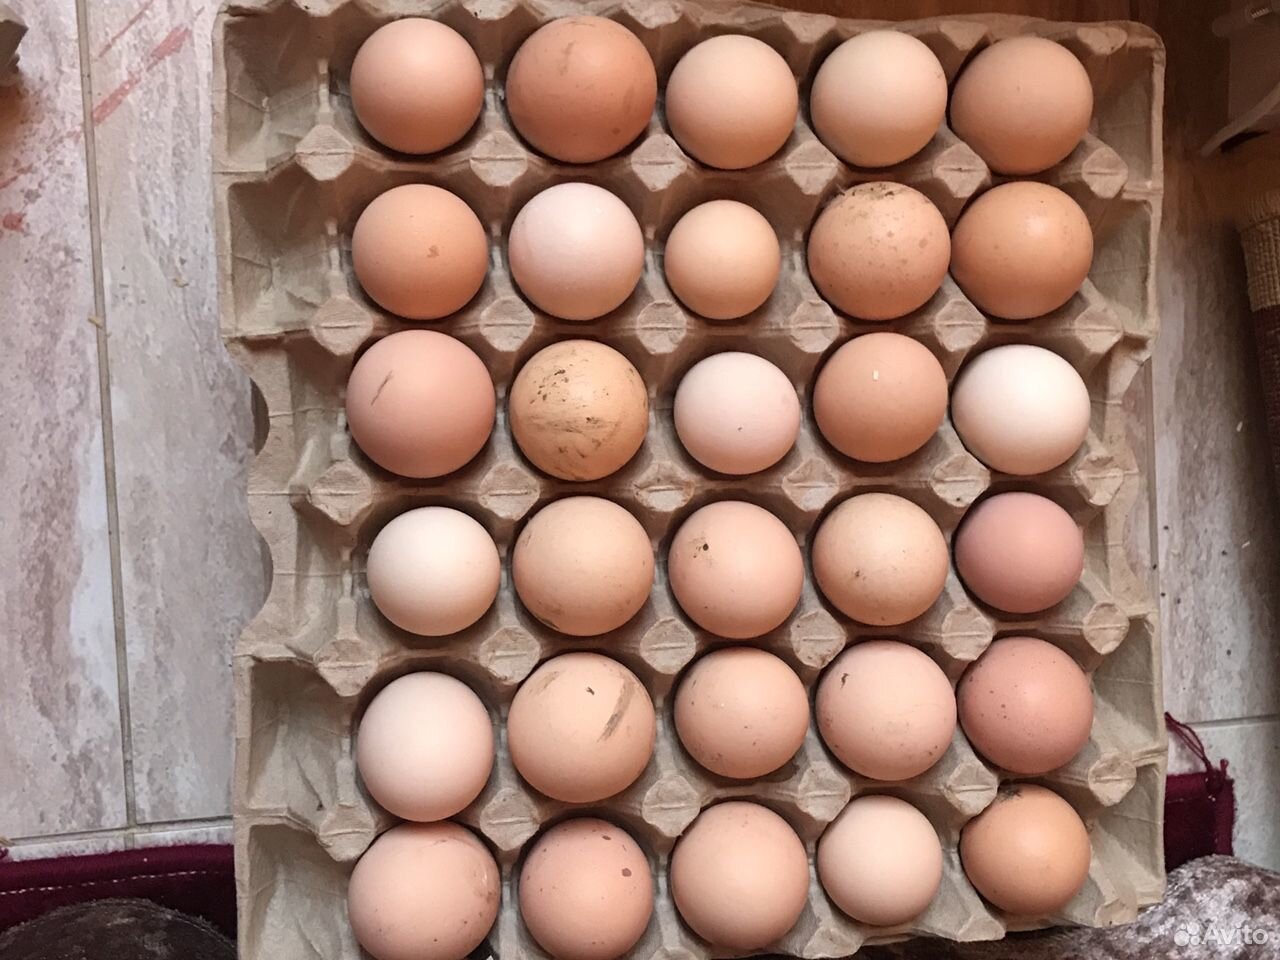 Купить яйца брама. Яйцо инкубационное Брама. Яйца Брама фото. Какого цвета яйца у Брама. Яйца брамы купить авито.